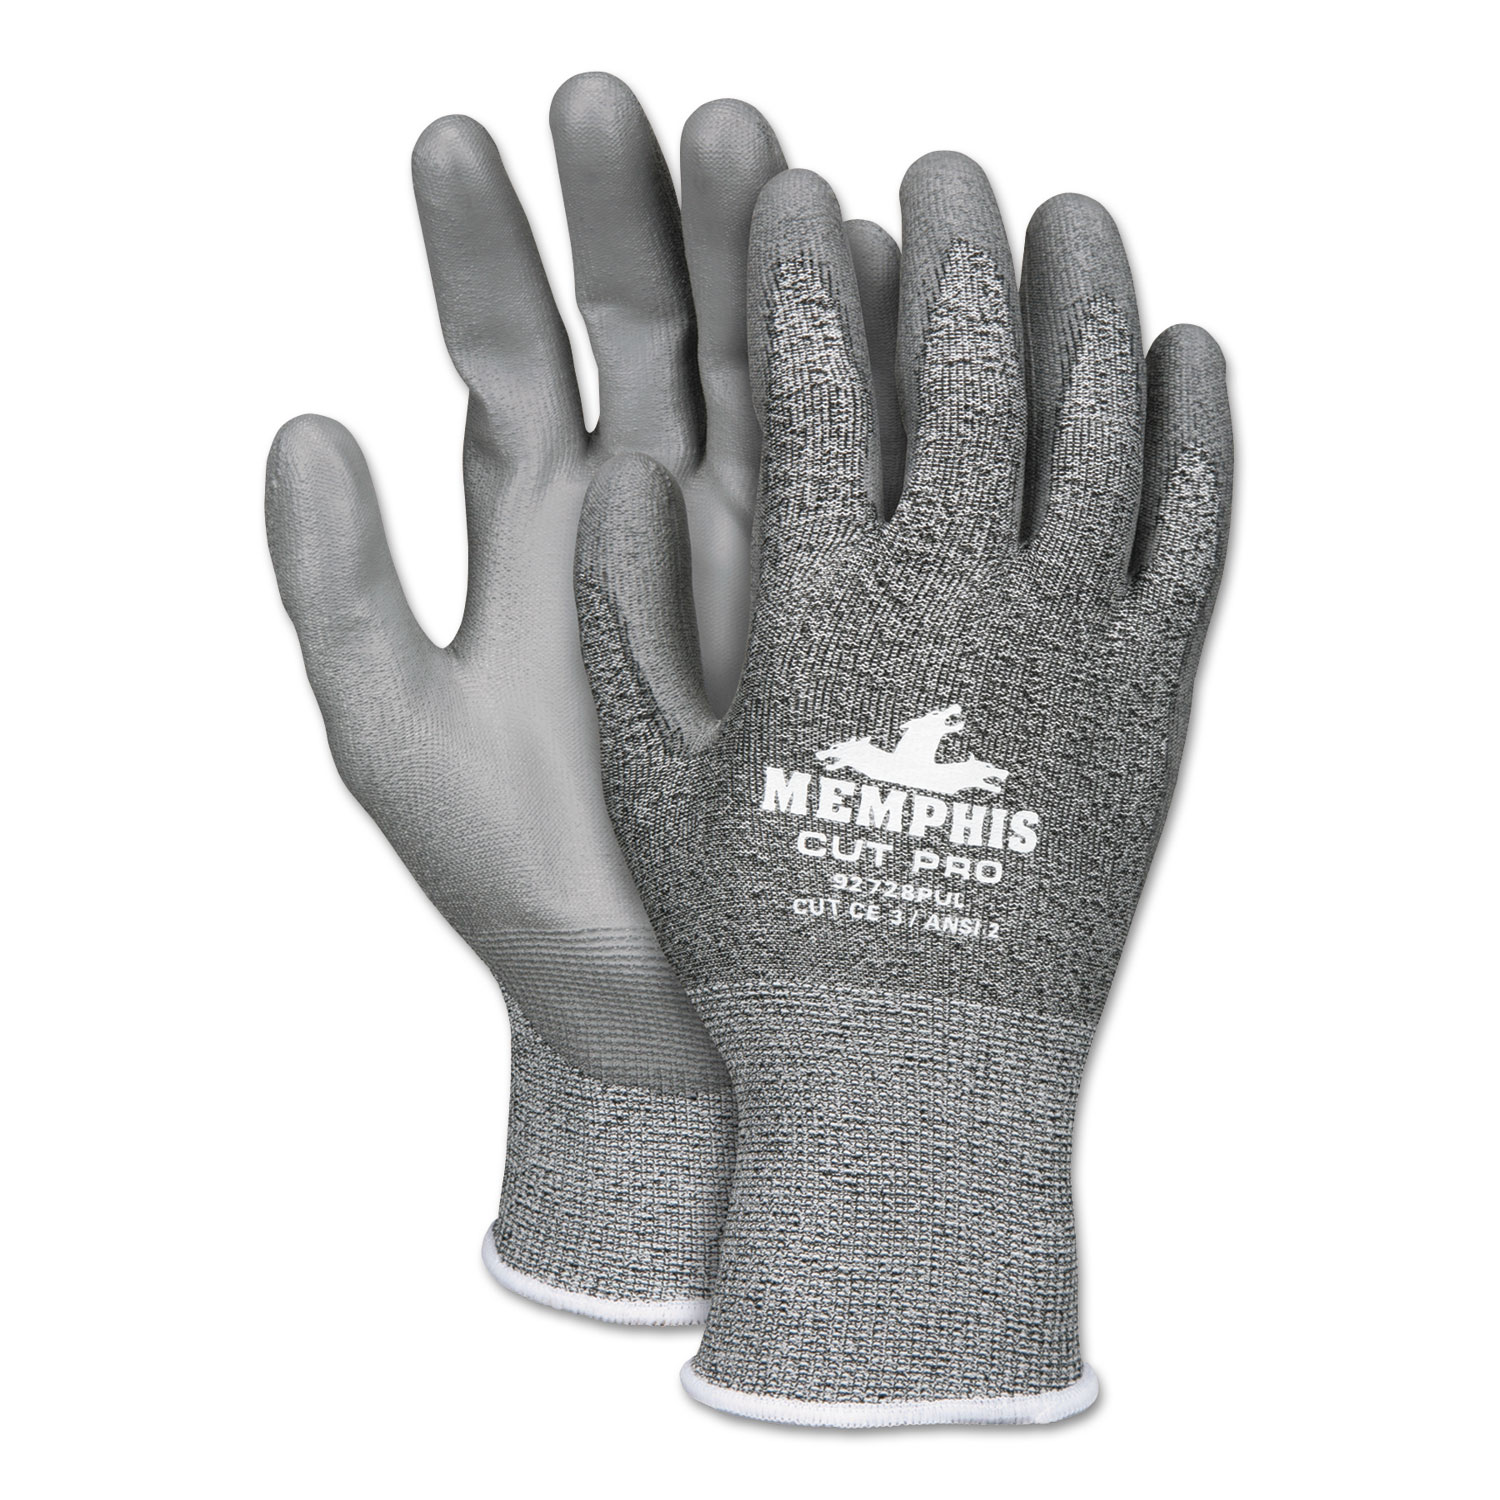 Memphis Cut Pro 92728PU Glove, Black/White/Gray, Small, Dozen